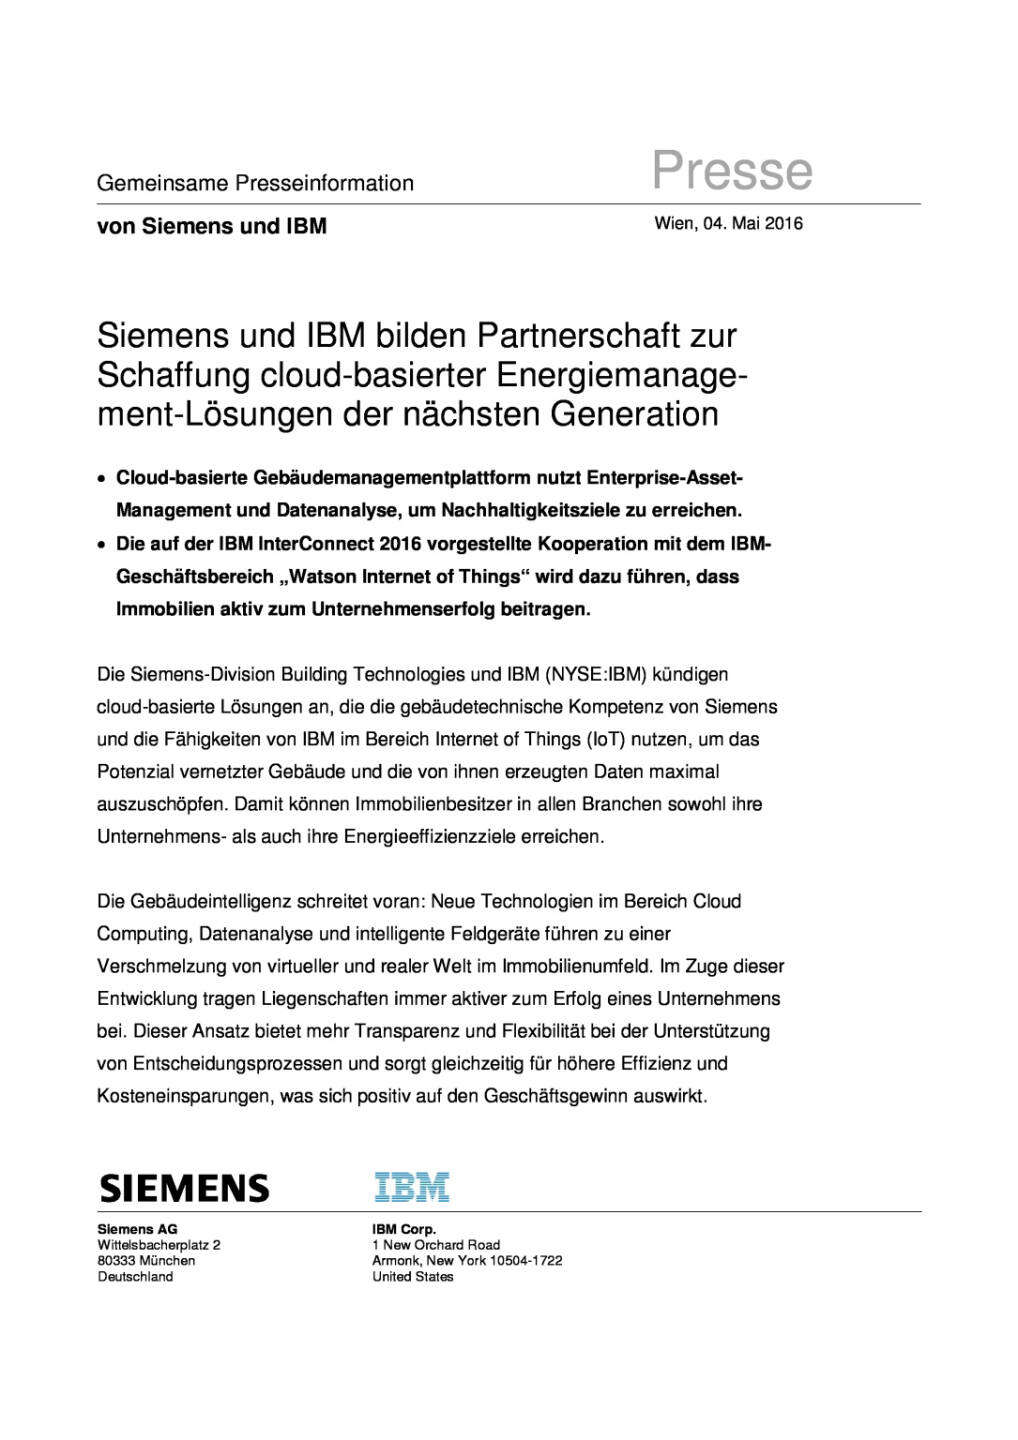 Siemens und IBM bilden Partnerschaft zur Schaffung cloud-basierter Energiemanagement-Lösungen, Seite 1/4, komplettes Dokument unter http://boerse-social.com/static/uploads/file_1007_siemens_und_ibm_bilden_partnerschaft_zur_schaffung_cloud-basierter_energiemanagement-losungen.pdf